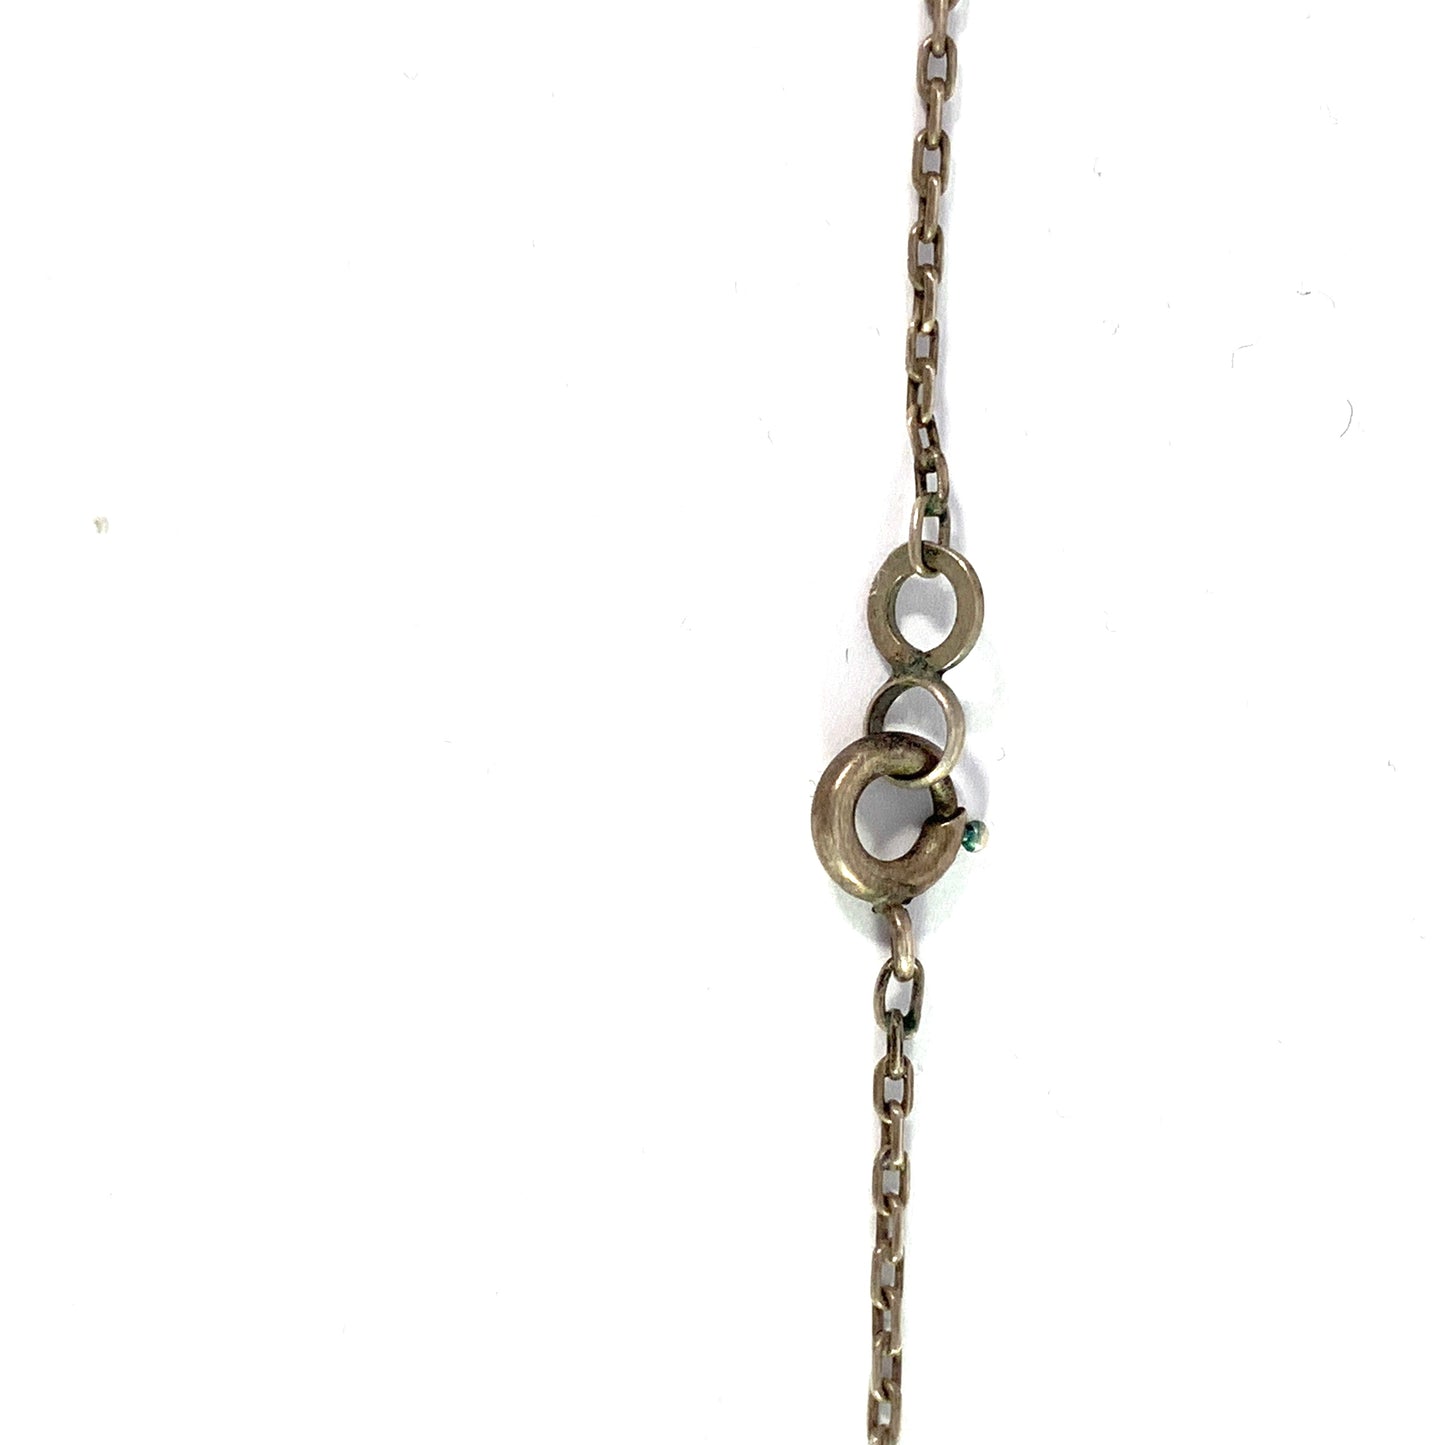 Levinger and Bissinger, Germany 1903-09 Solid 900 Silver Chrysoprase Jugendstil Pendant Necklace.